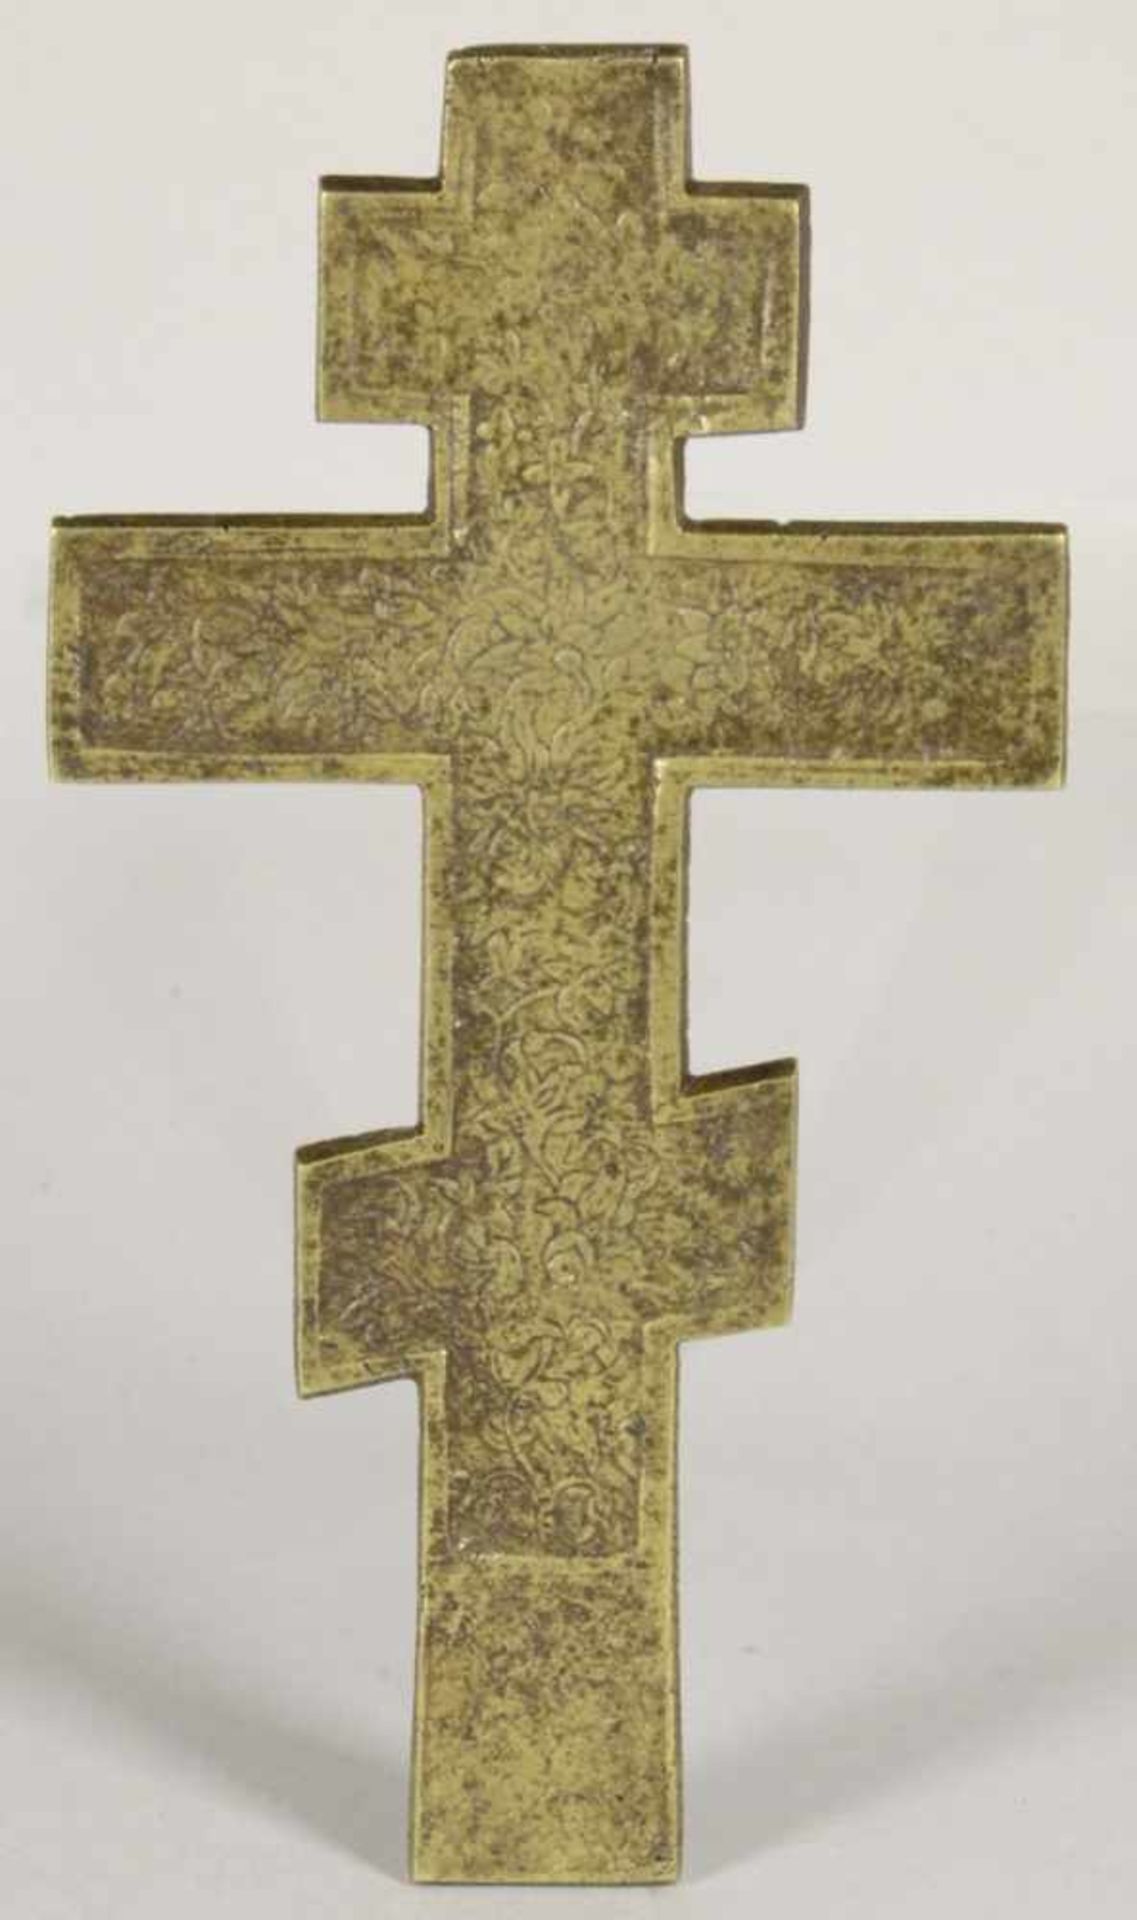 Bronze-Ikonenkreuz, Russland, 19. Jh., flache, orthodoxe Kreuzform mit reliefiertem CorpusChristi, - Bild 2 aus 2